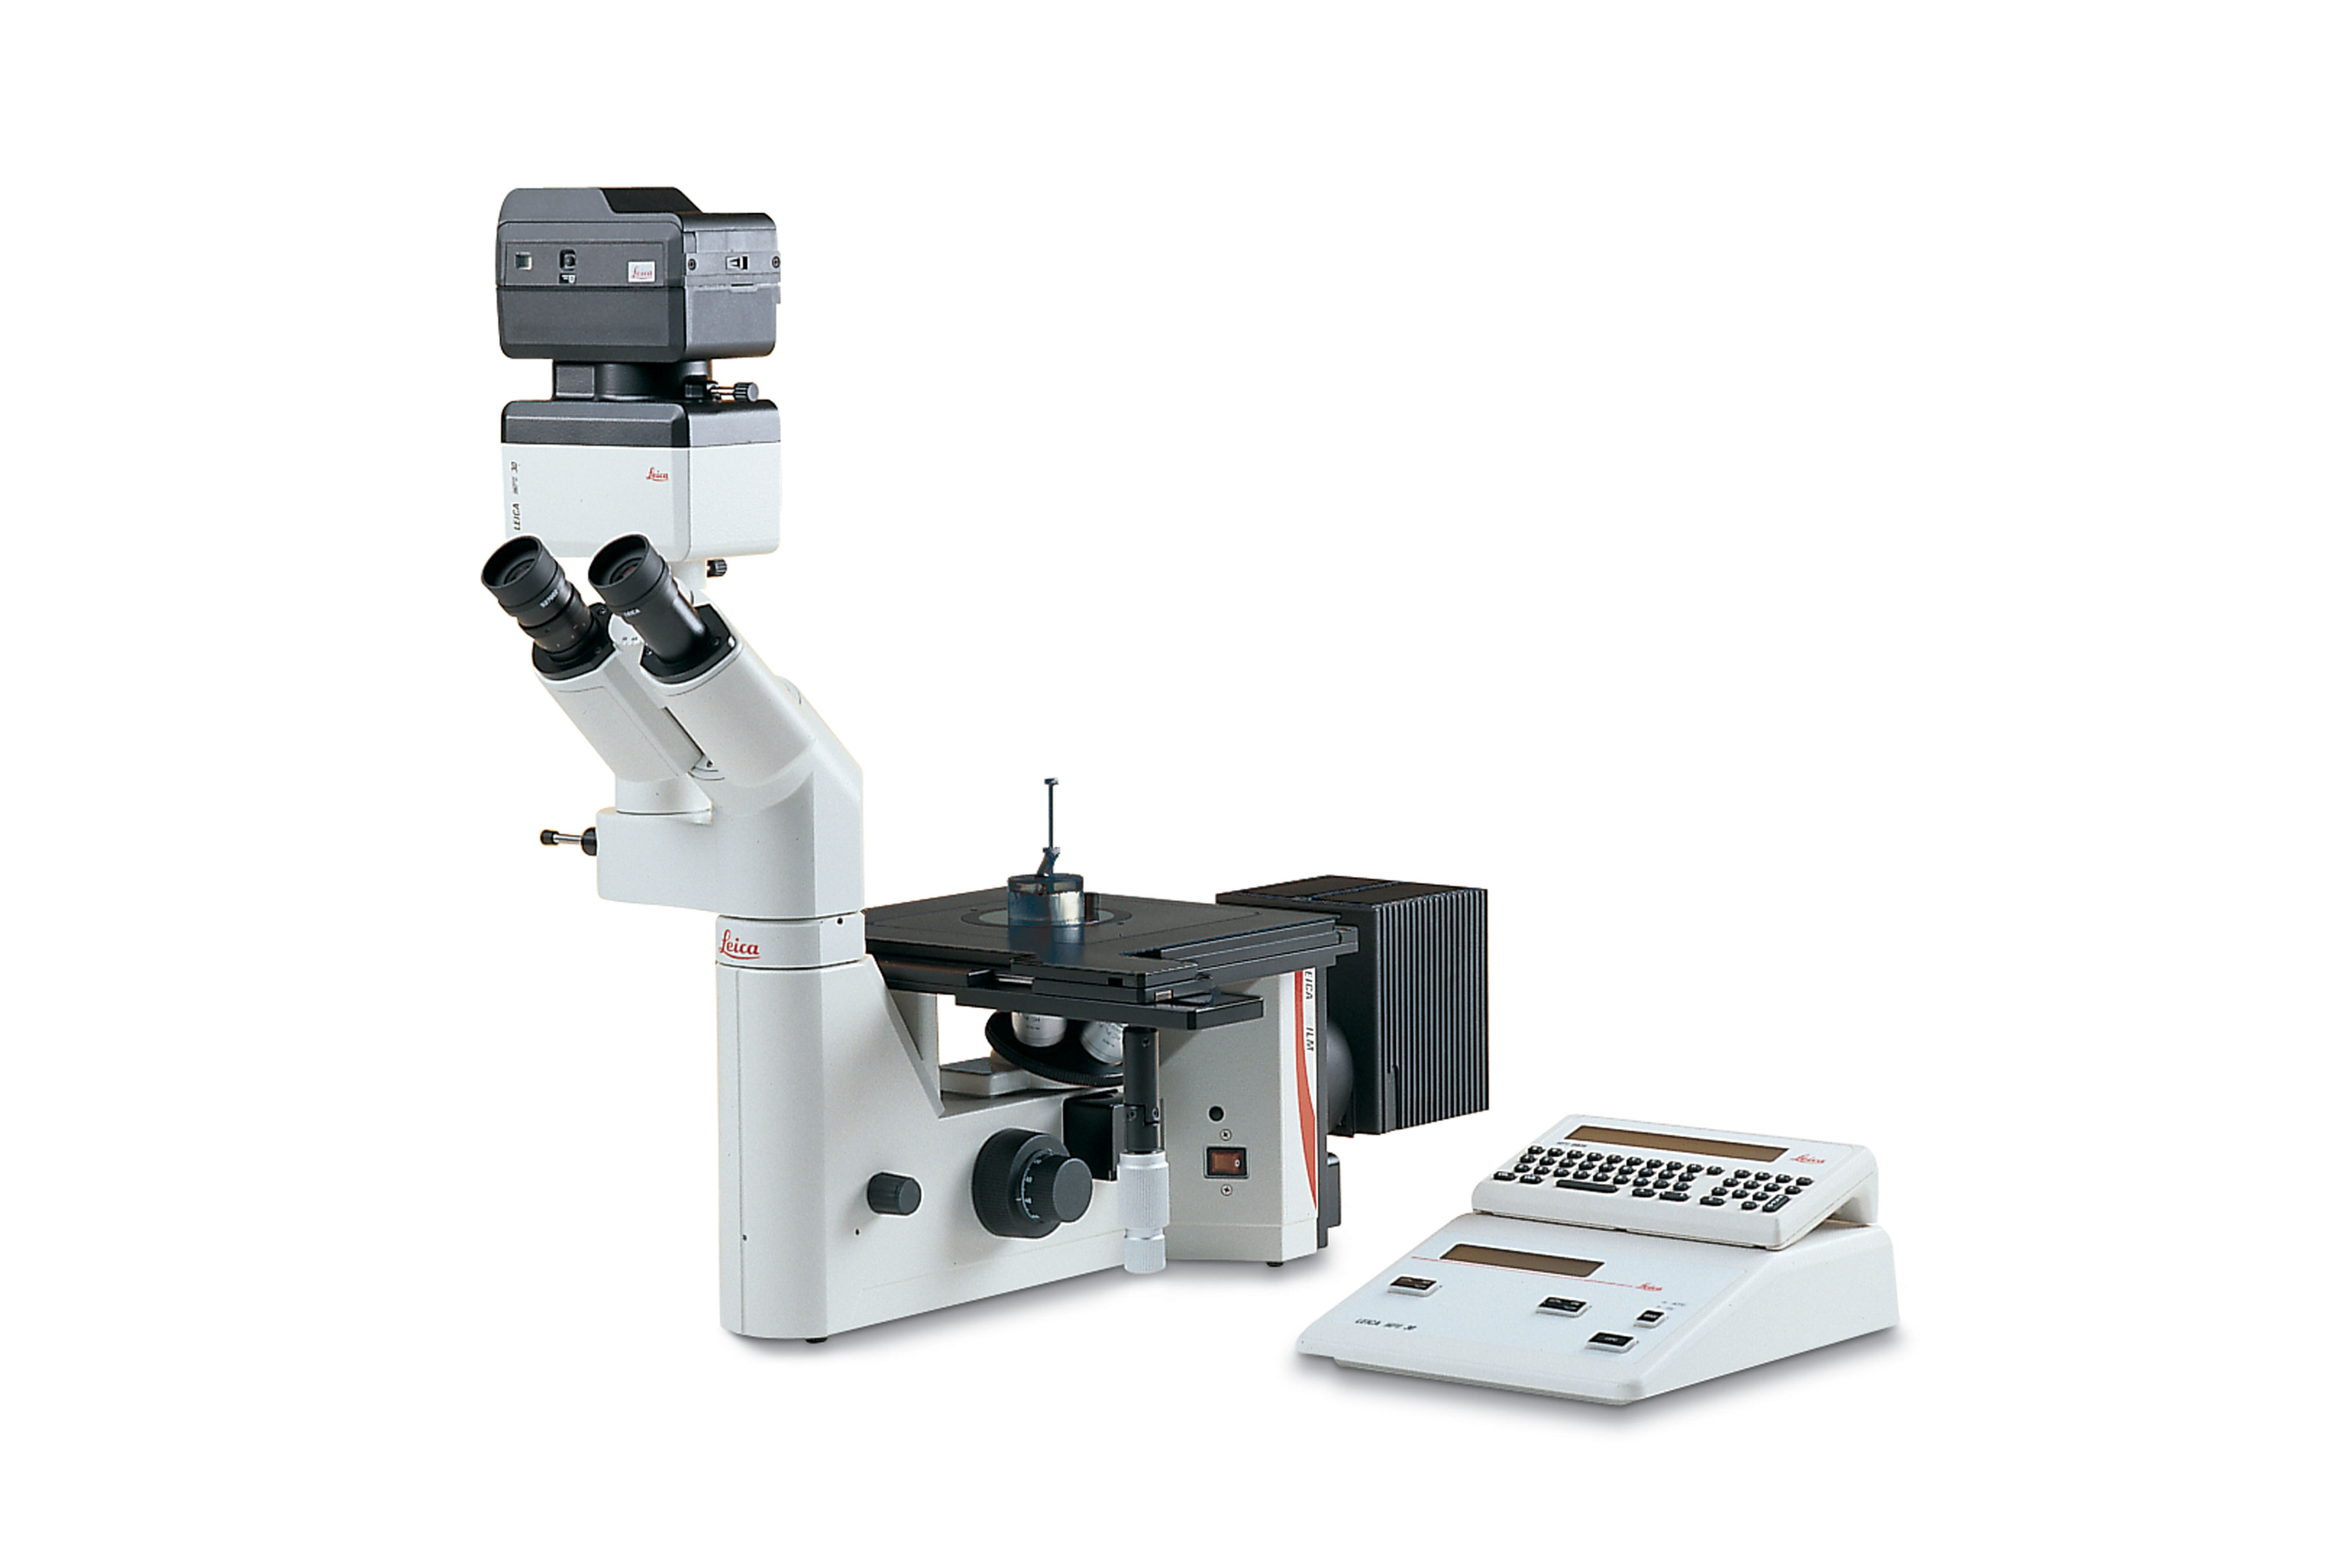 Con el microscopio Leica DM ILM, la investigación de materiales y el control de calidad industrial son tarea fácil.